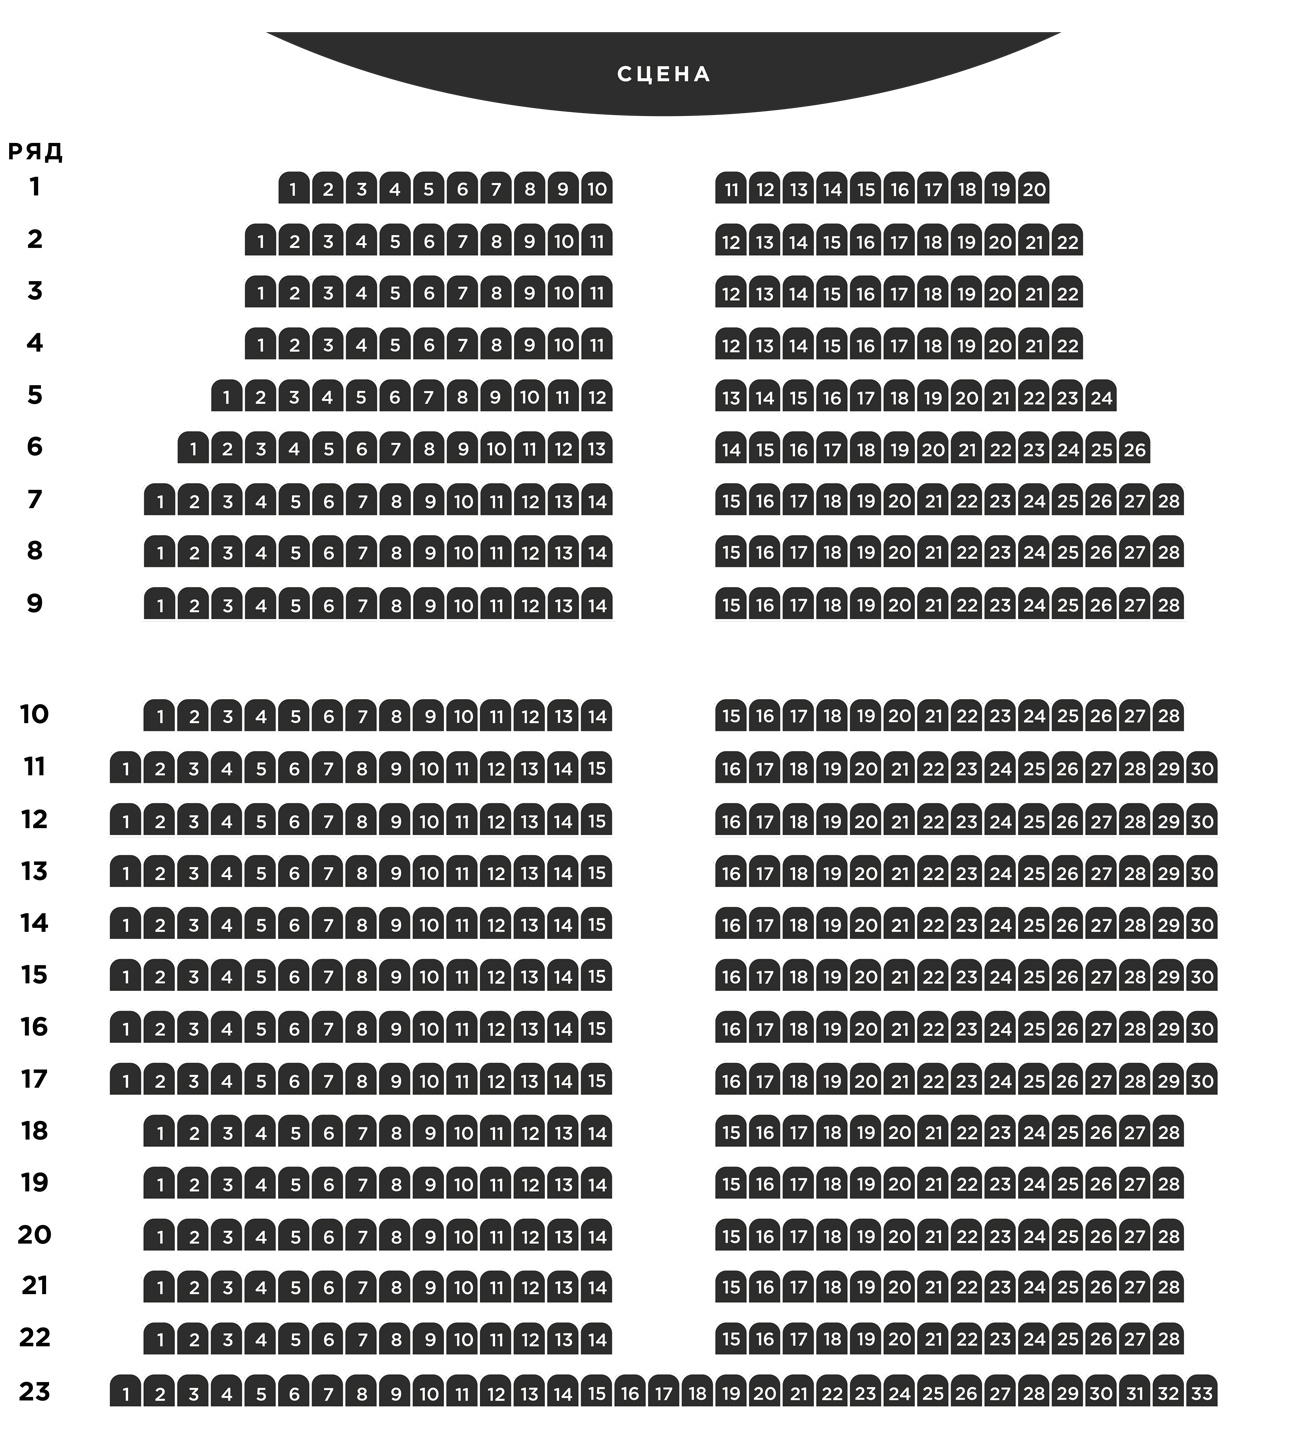 Схема Театра Фото